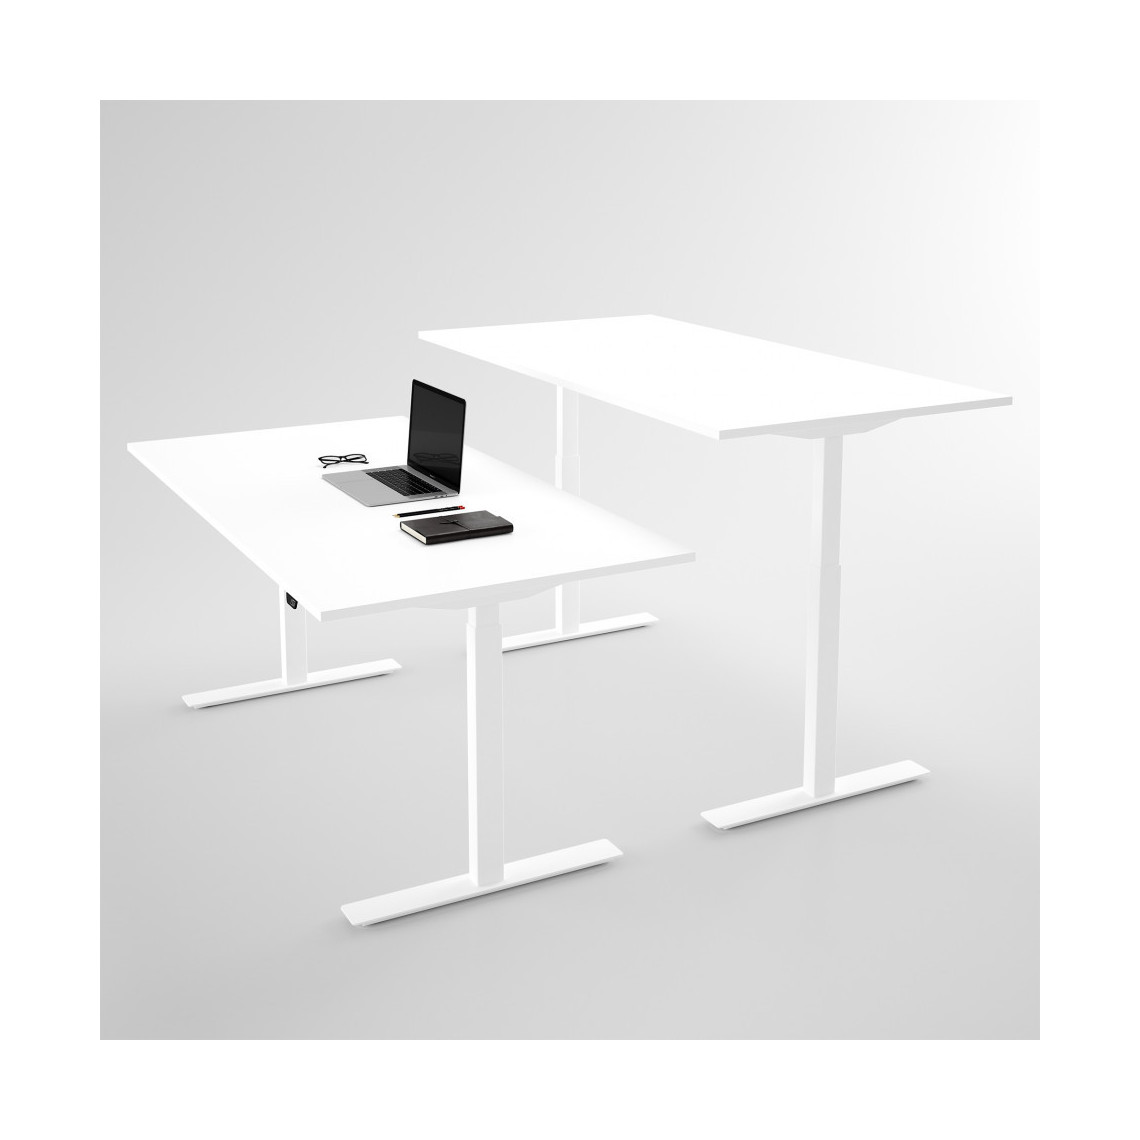 Hæve sænkebord - Pro3, Størrelse 120x60 cm, Bordplade Hvid, Stativ Hvid